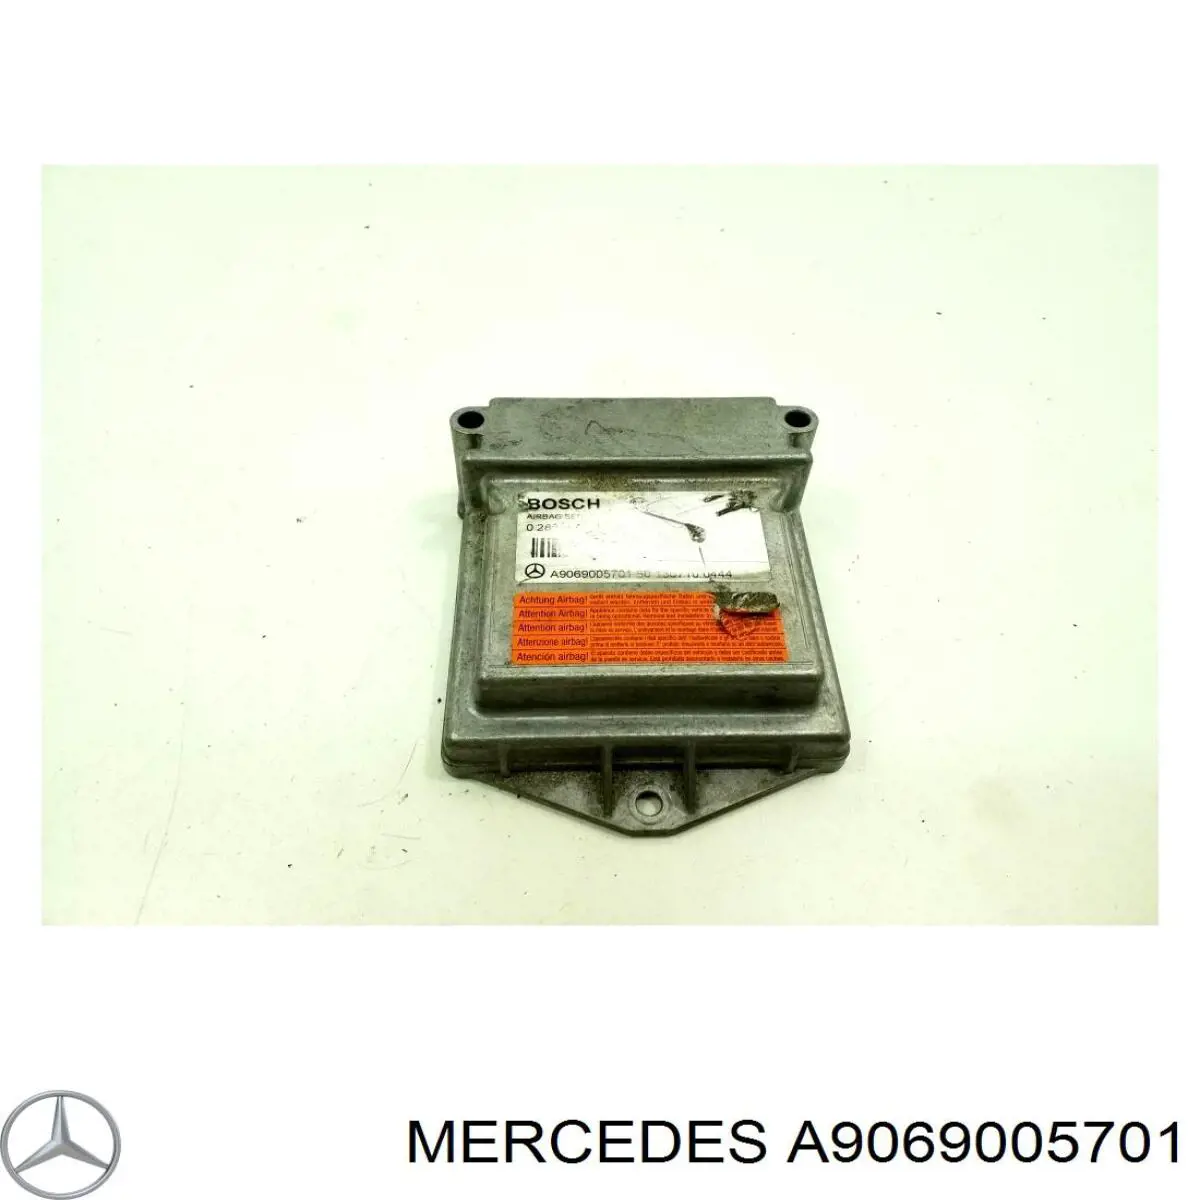 A9069005701 Mercedes procesador del modulo de control de airbag